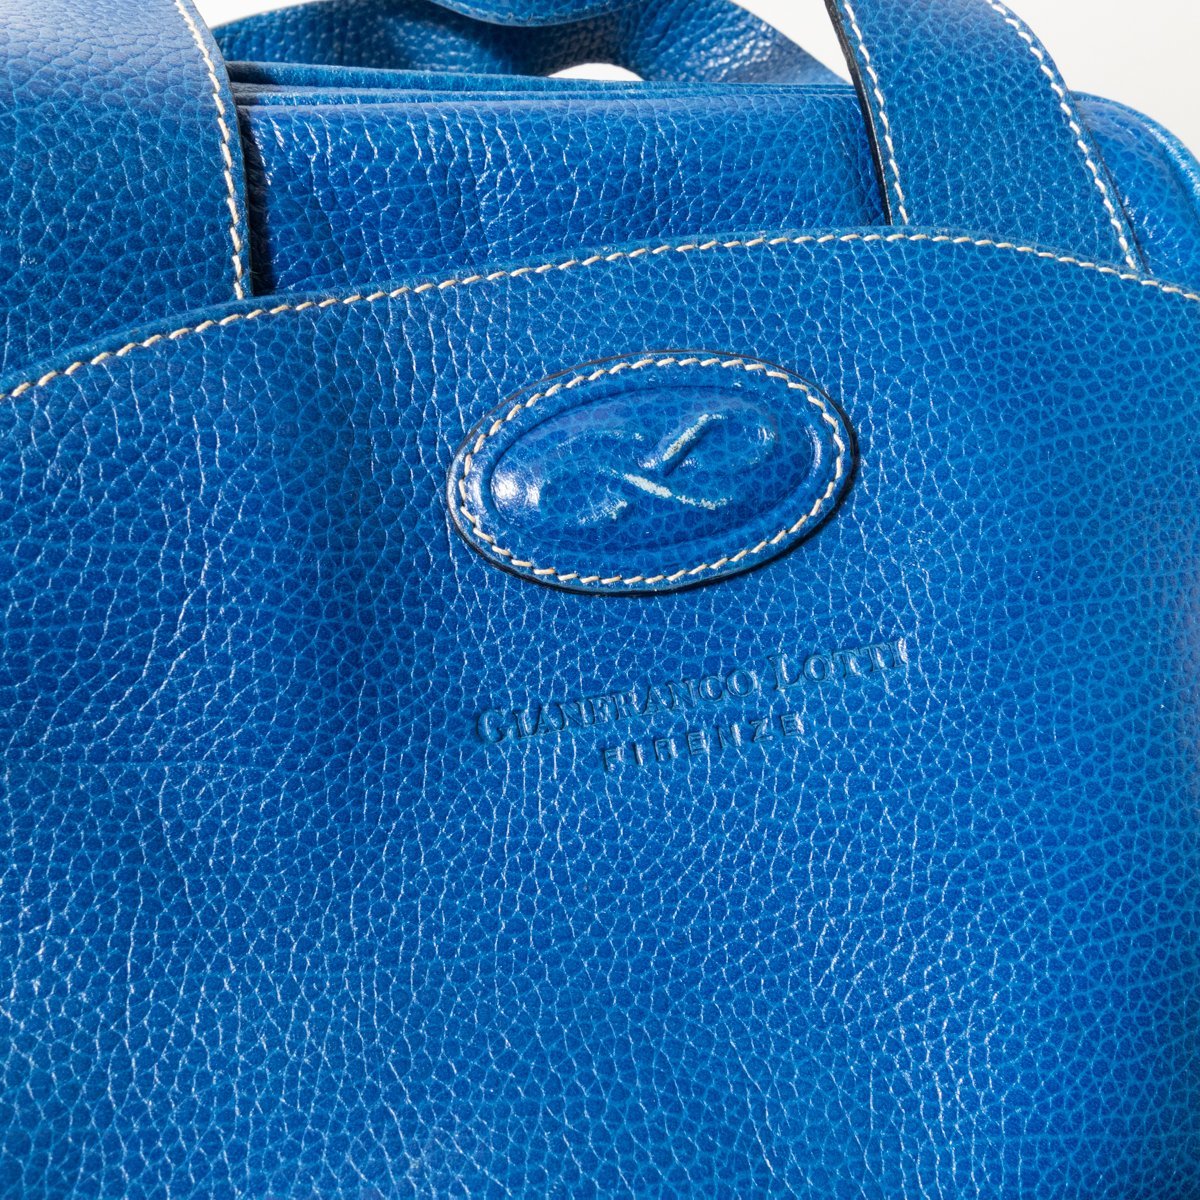 GIANFRANCO LOTTI ジャンフランコロッティ レザー 本革 ハンドバッグ コンパクト ブルー 青 レディース 婦人 女性 レトロ カジュアルの画像7